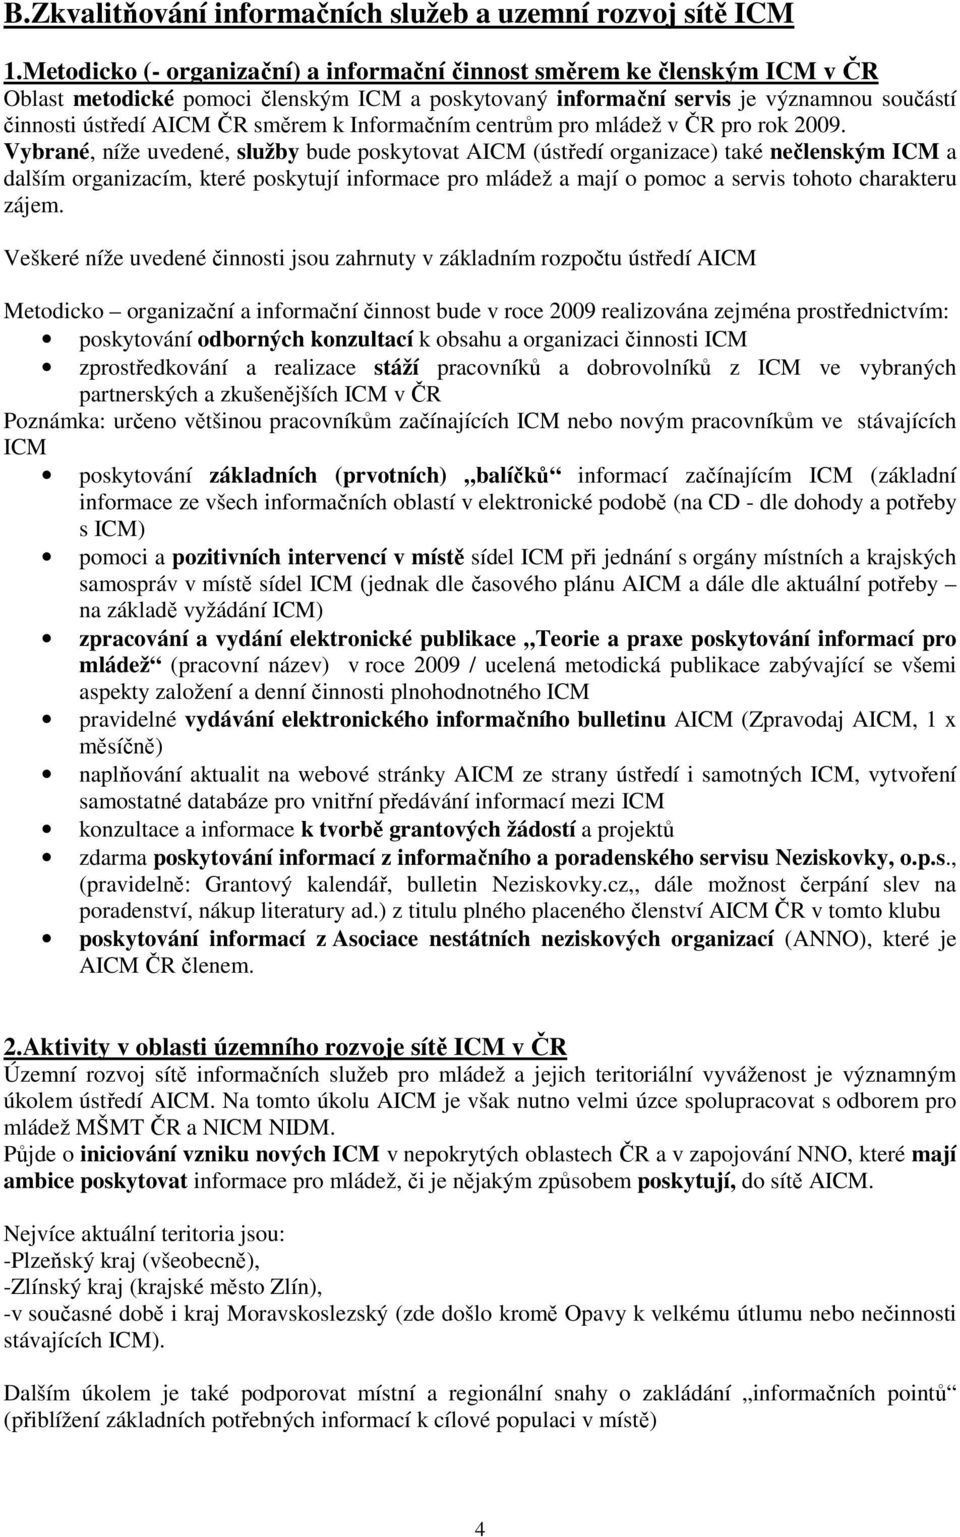 Informačním centrům pro mládež v ČR pro rok 2009.